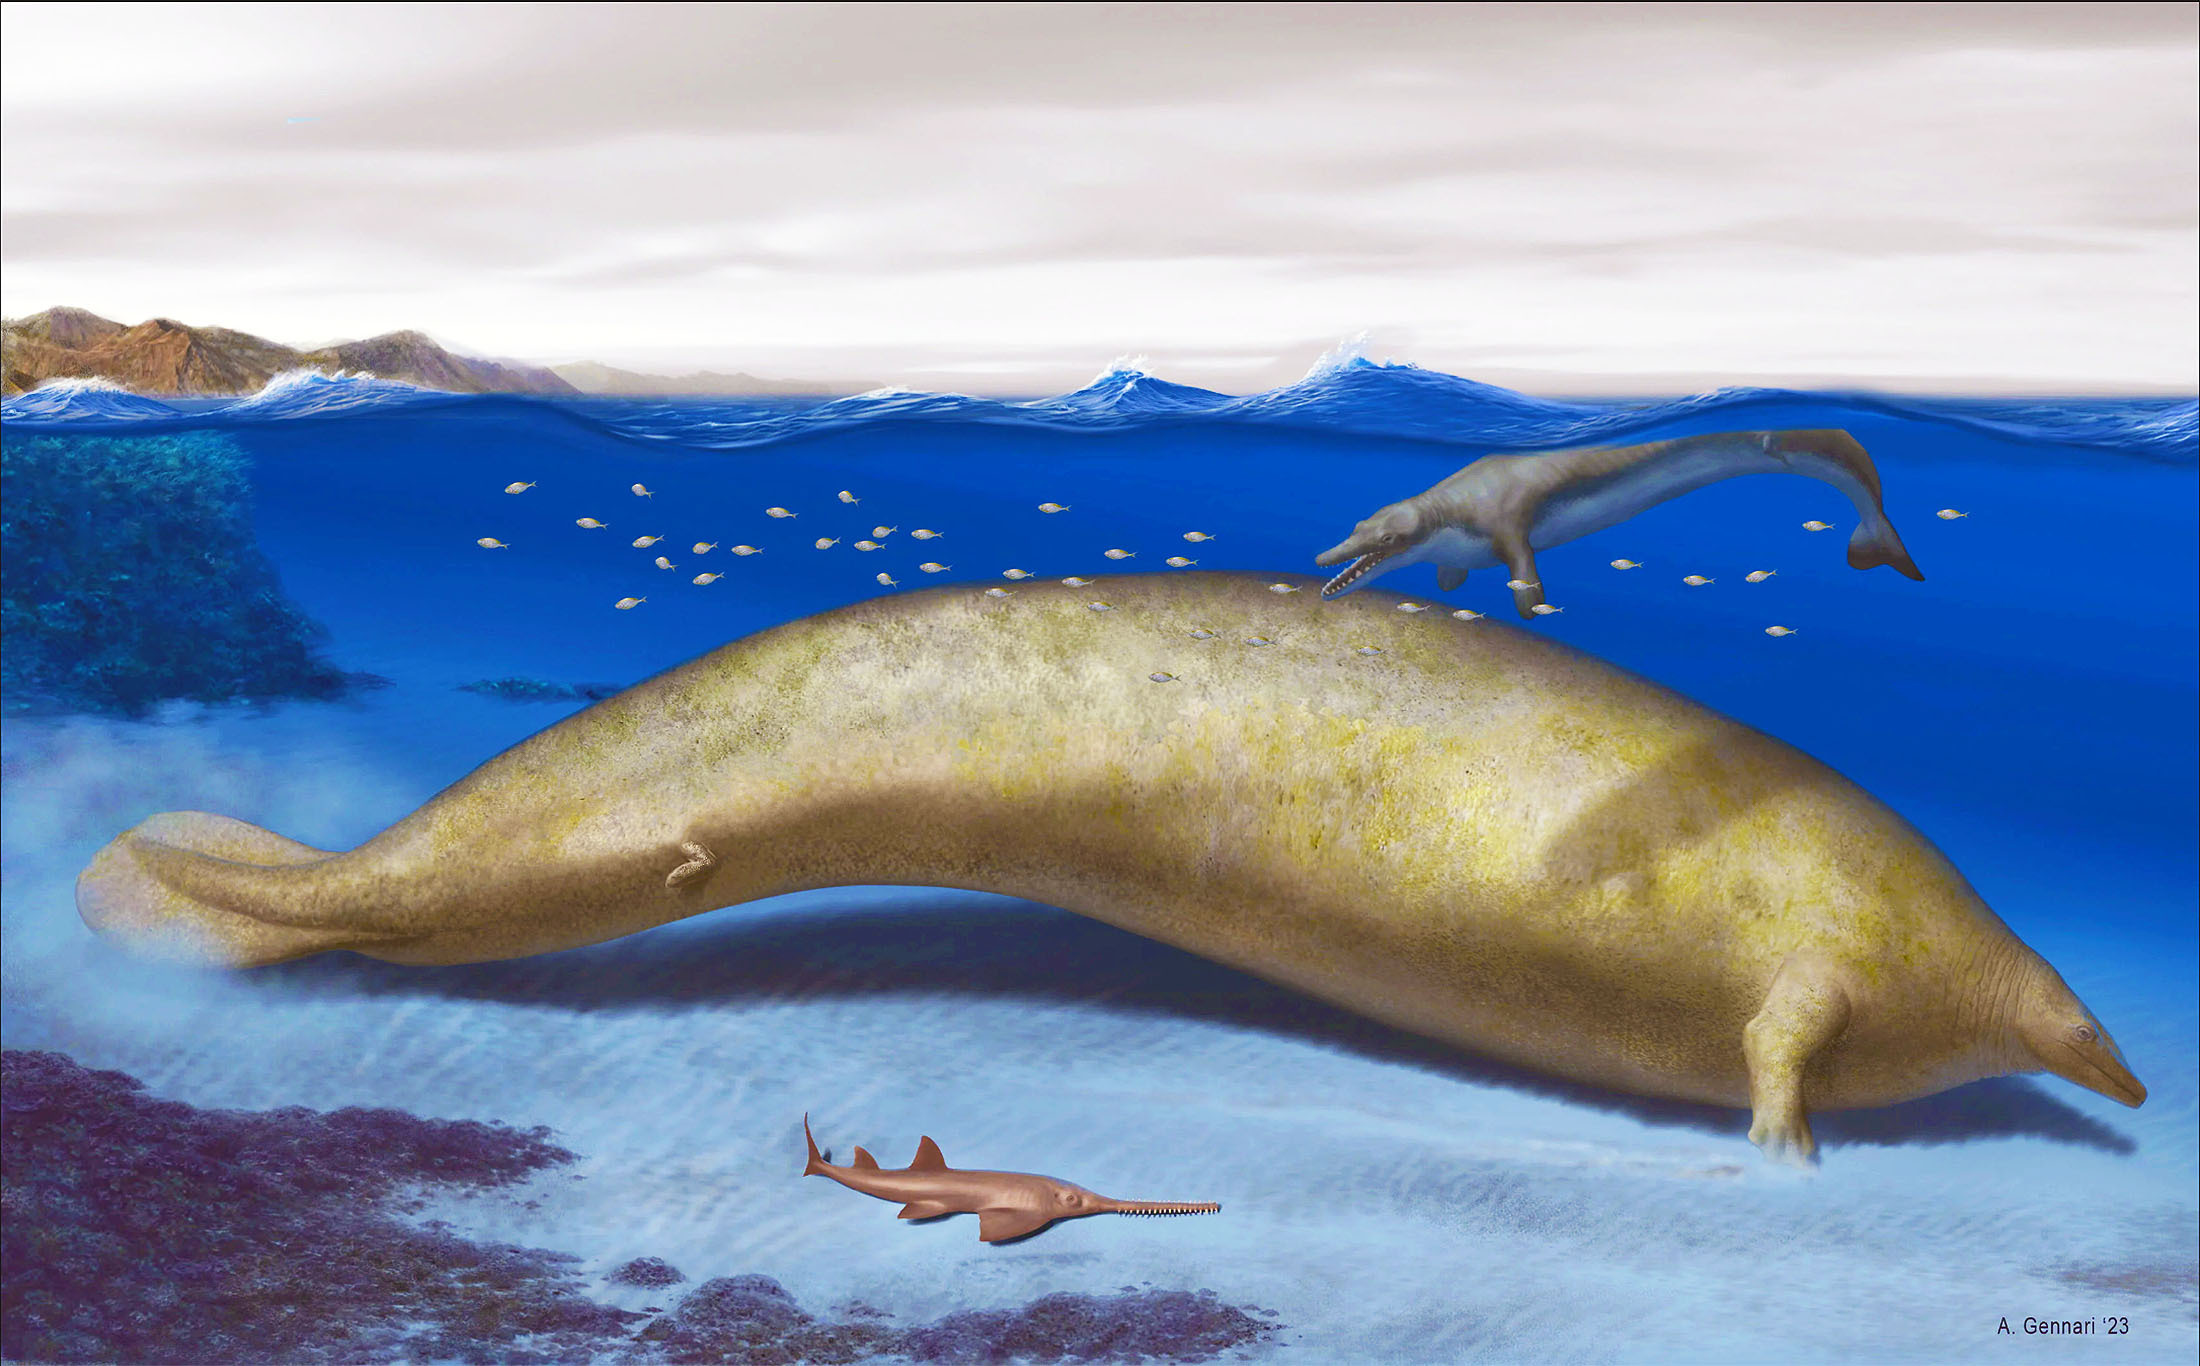 Přečtete si více ze článku Vědecký dvoutýdeník: Odhalování tajemství pravěkého druhu obří velryby